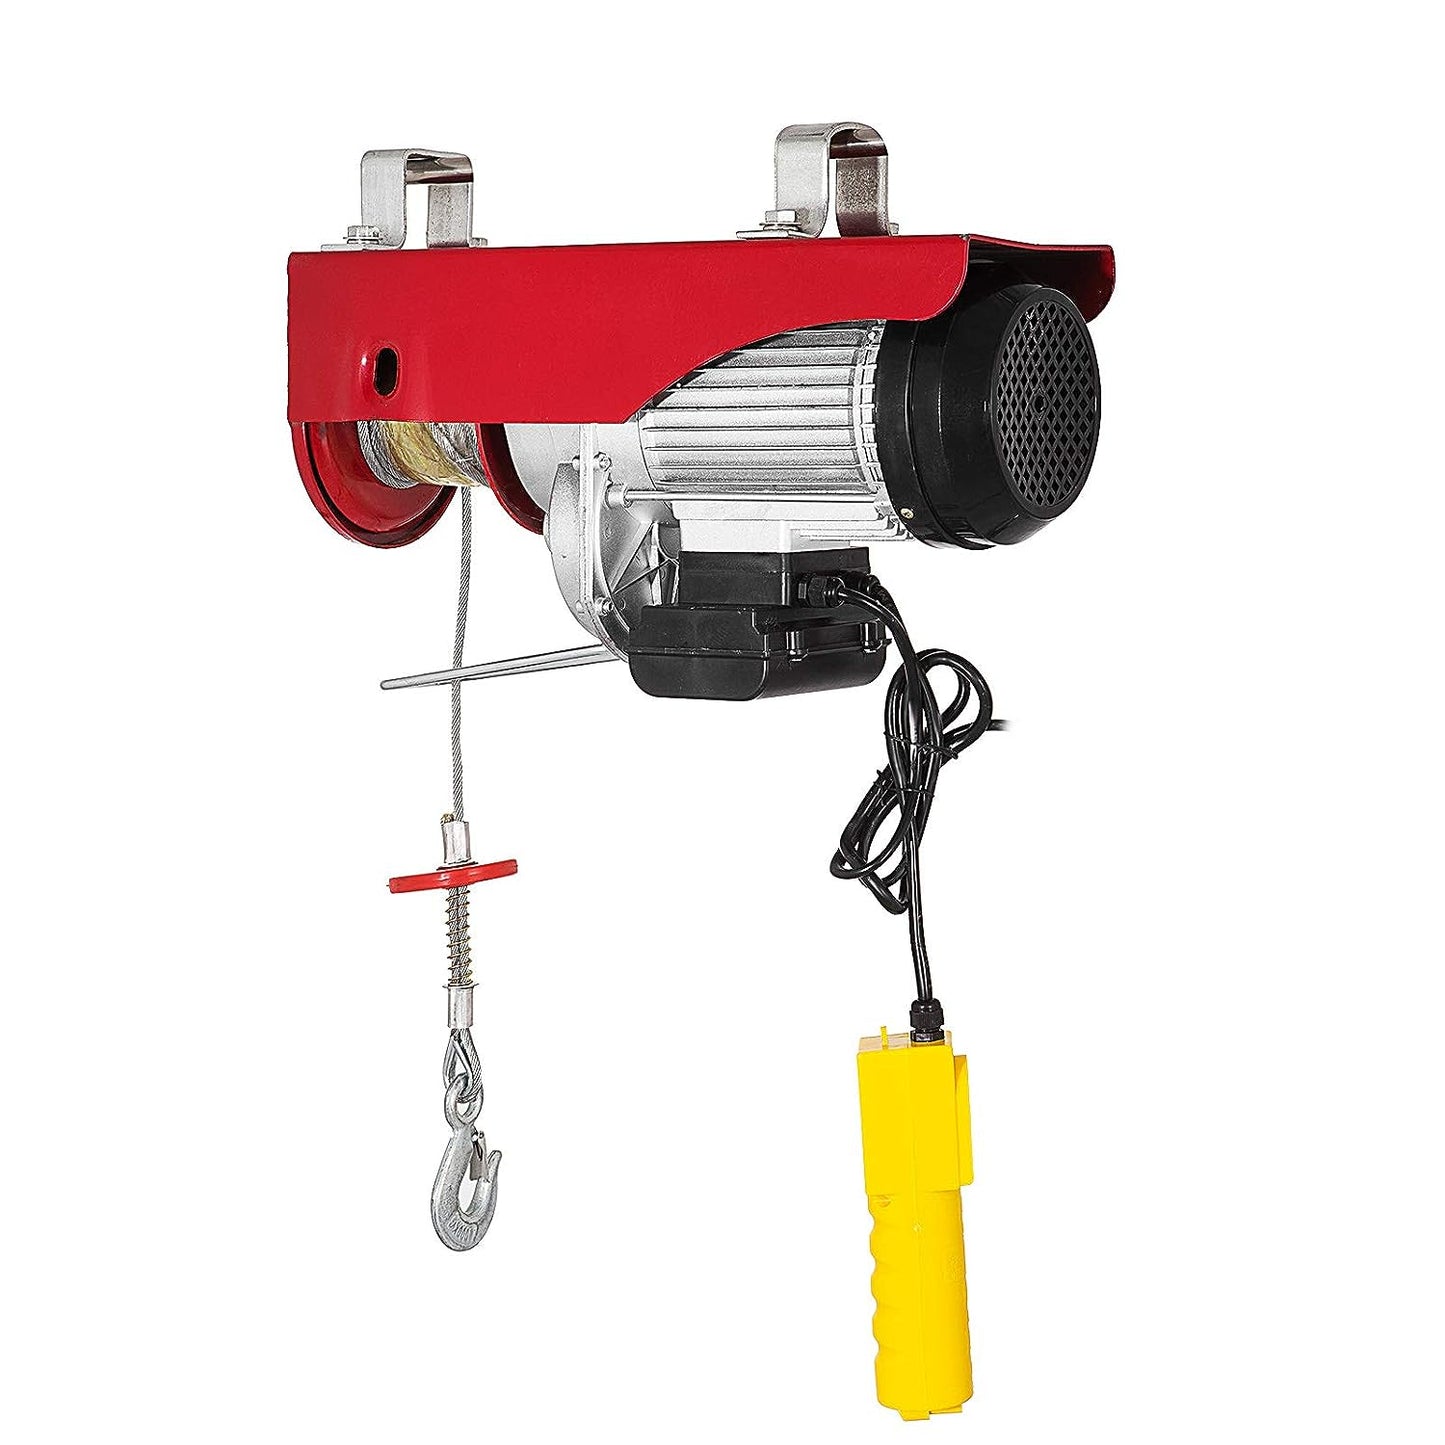 Electric Hoist Crane Winch, Remote Control, 250kg, Red